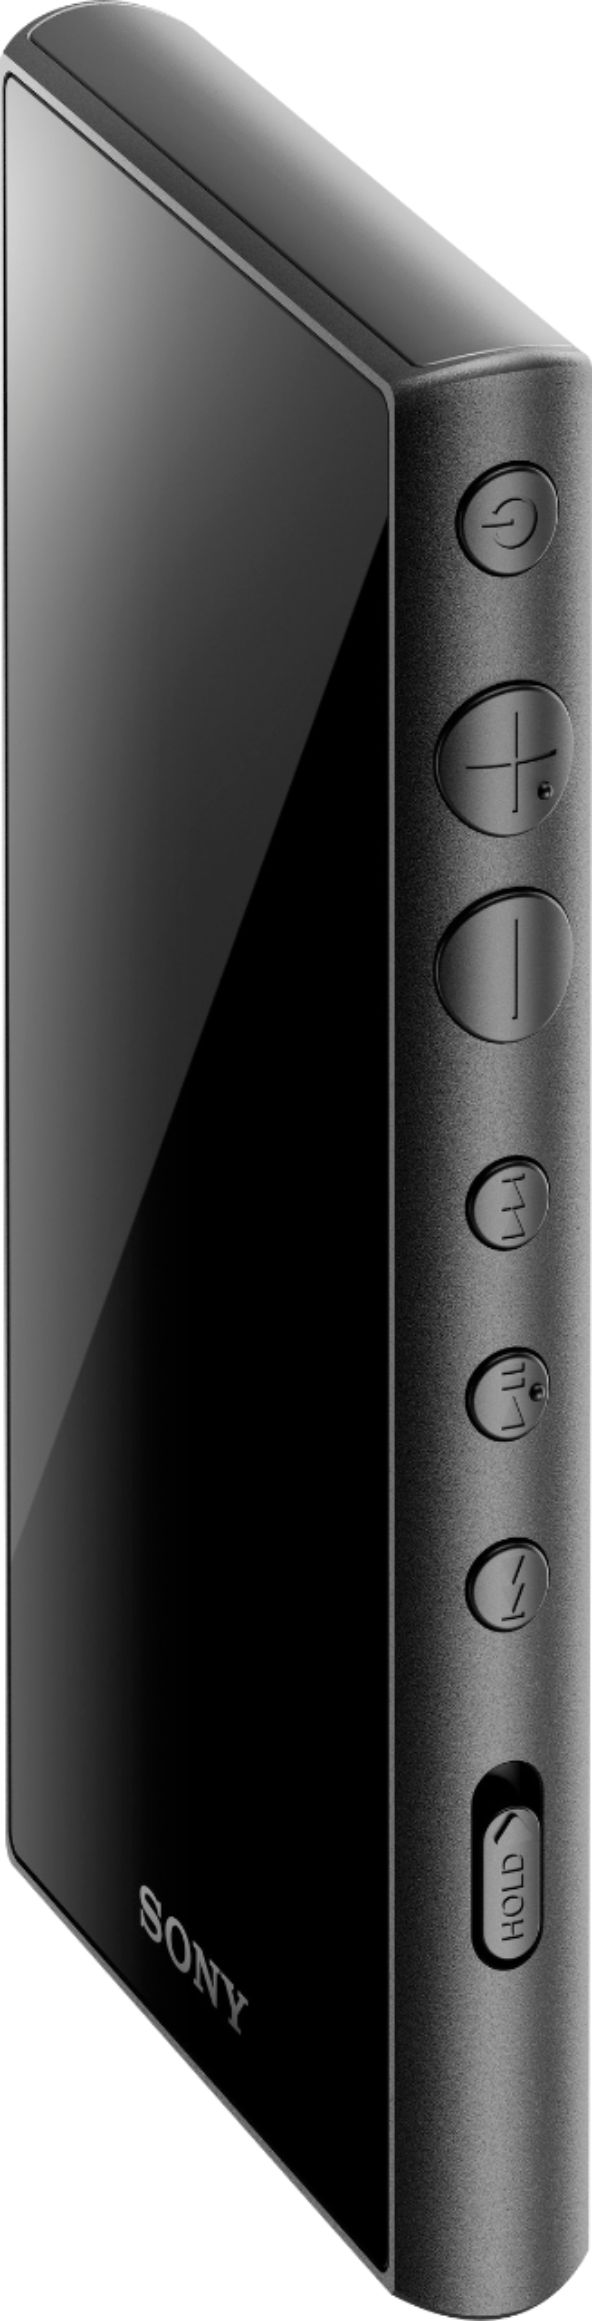 オーディオ機器 ポータブルプレーヤー Best Buy: Sony Walkman High-Resolution NW-A105 16GB* MP3 Player 